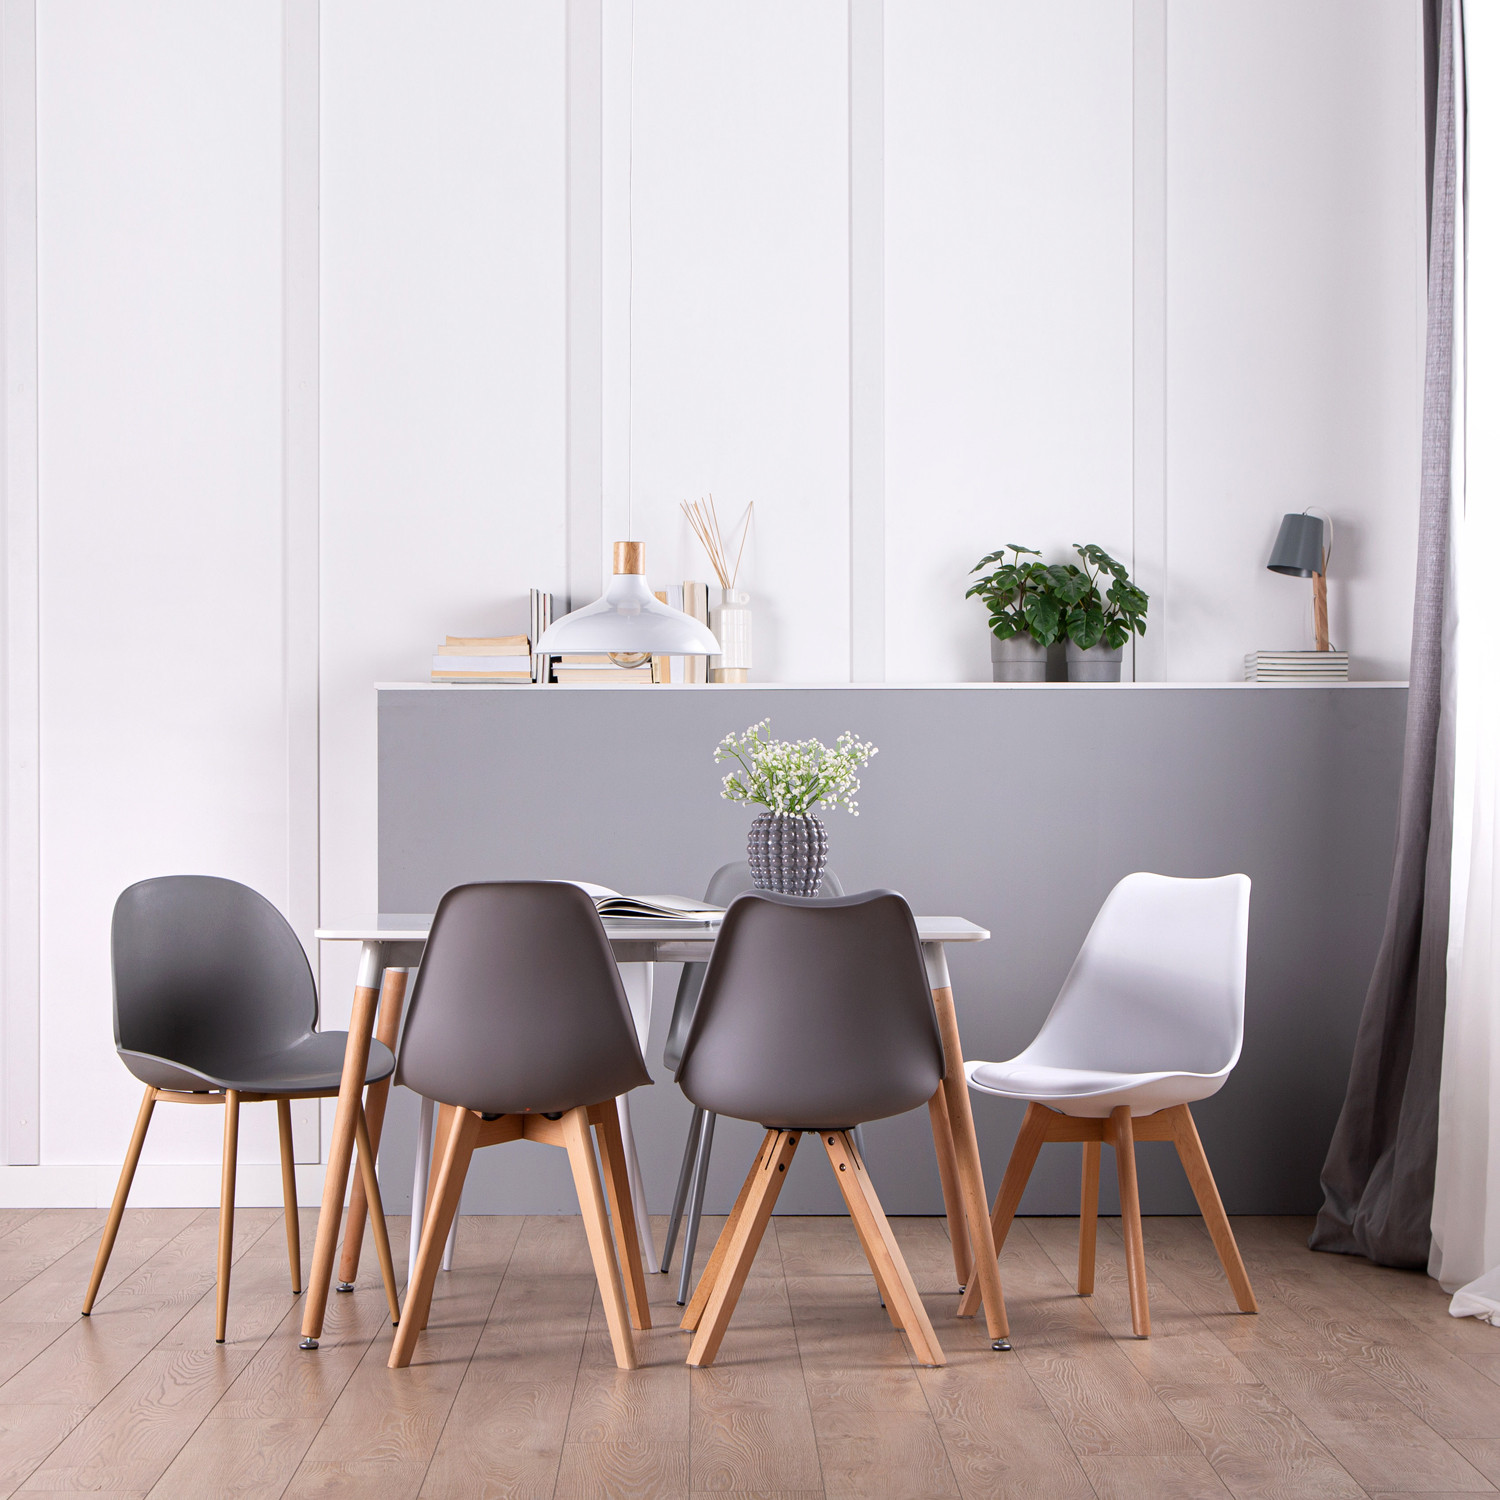 La mesa de comedor rectangular Gless es de estilo nórdico y minimalista. Se convierte en la elección segura si eres un apasionado del diseño escandinavo y tienes un espacio reducido. De líneas rectas